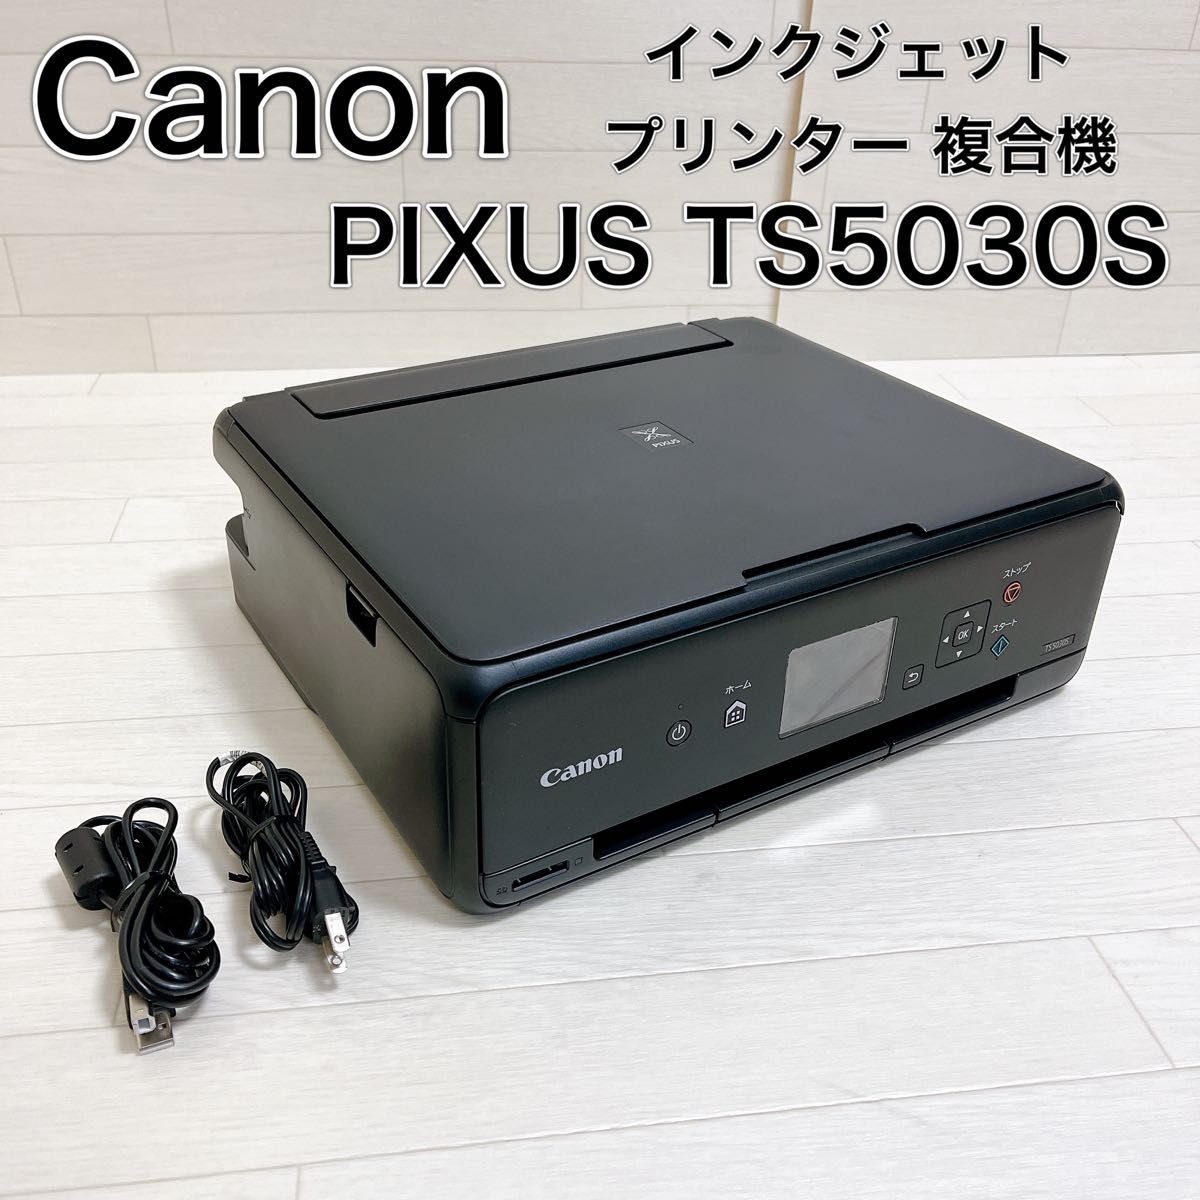 Canon プリンター A4インクジェット複合機 PIXUS TS5030S - プリンター